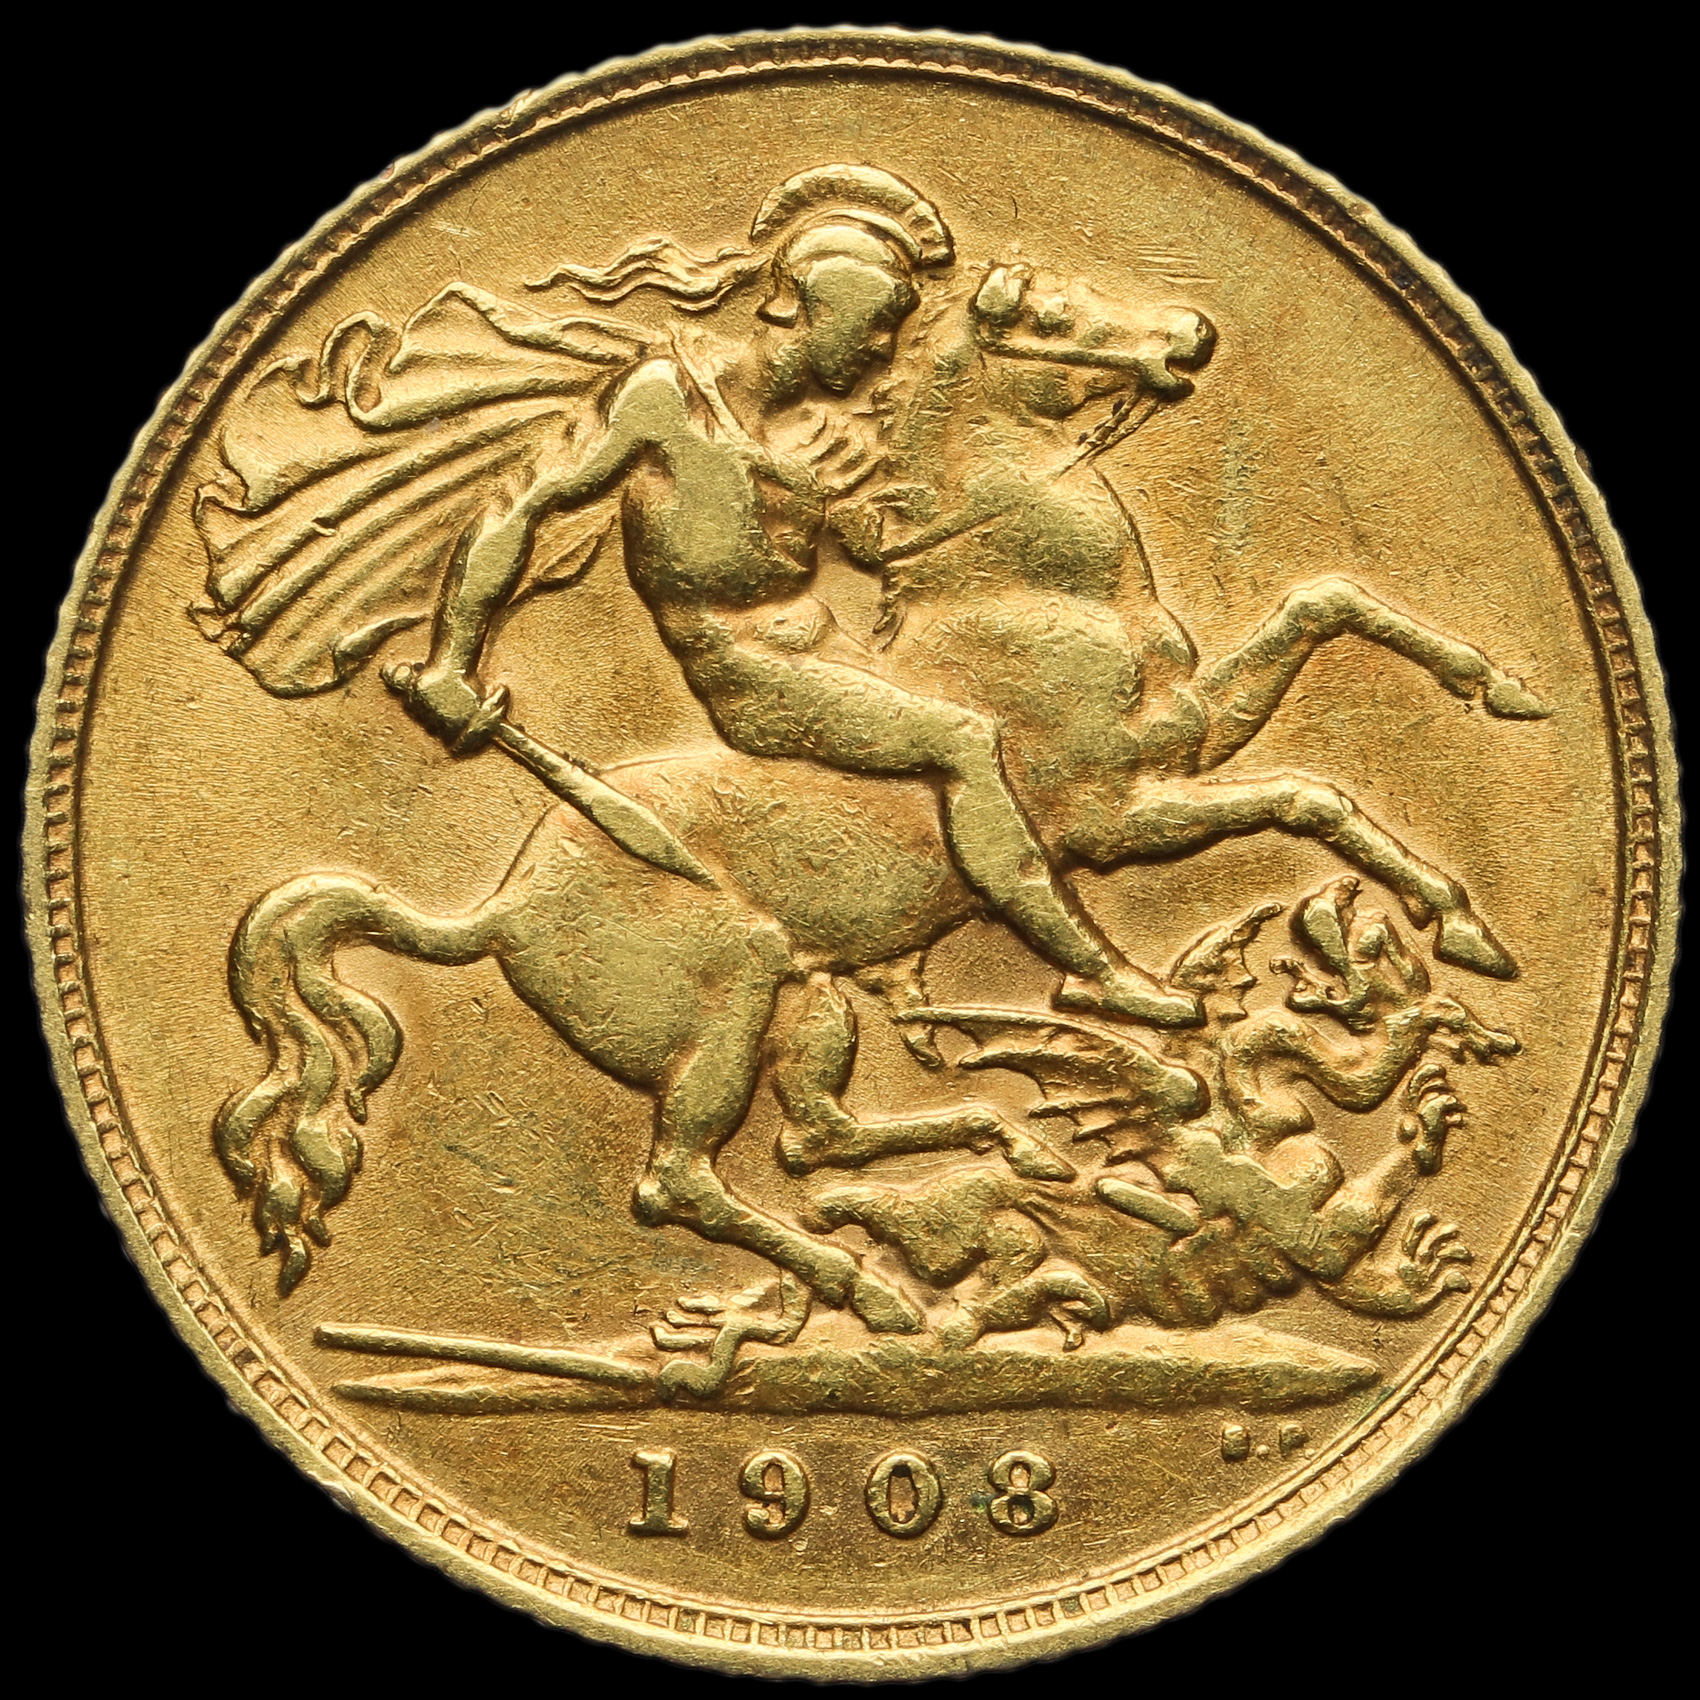 1908 half sovereign